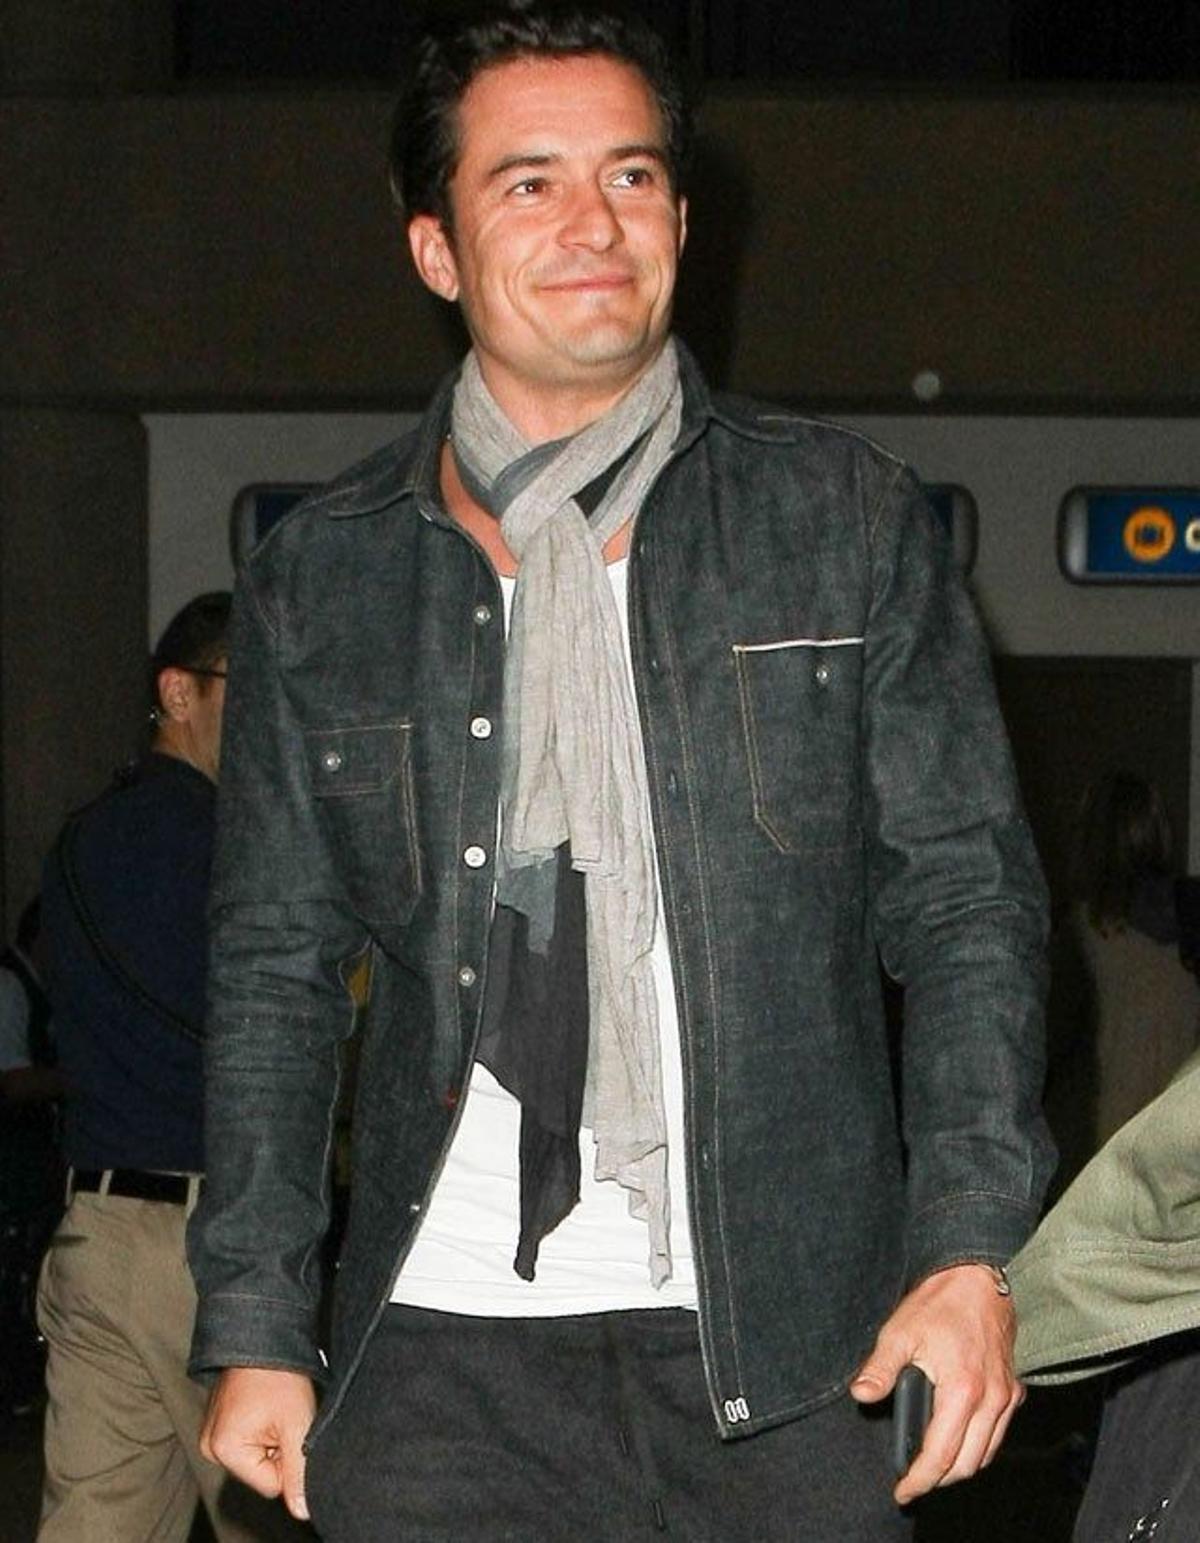 Orlando Bloom no pierde la sonrisa, a pesar de la presencia de los fotógrafos en el aeropuerto de Los Ángeles